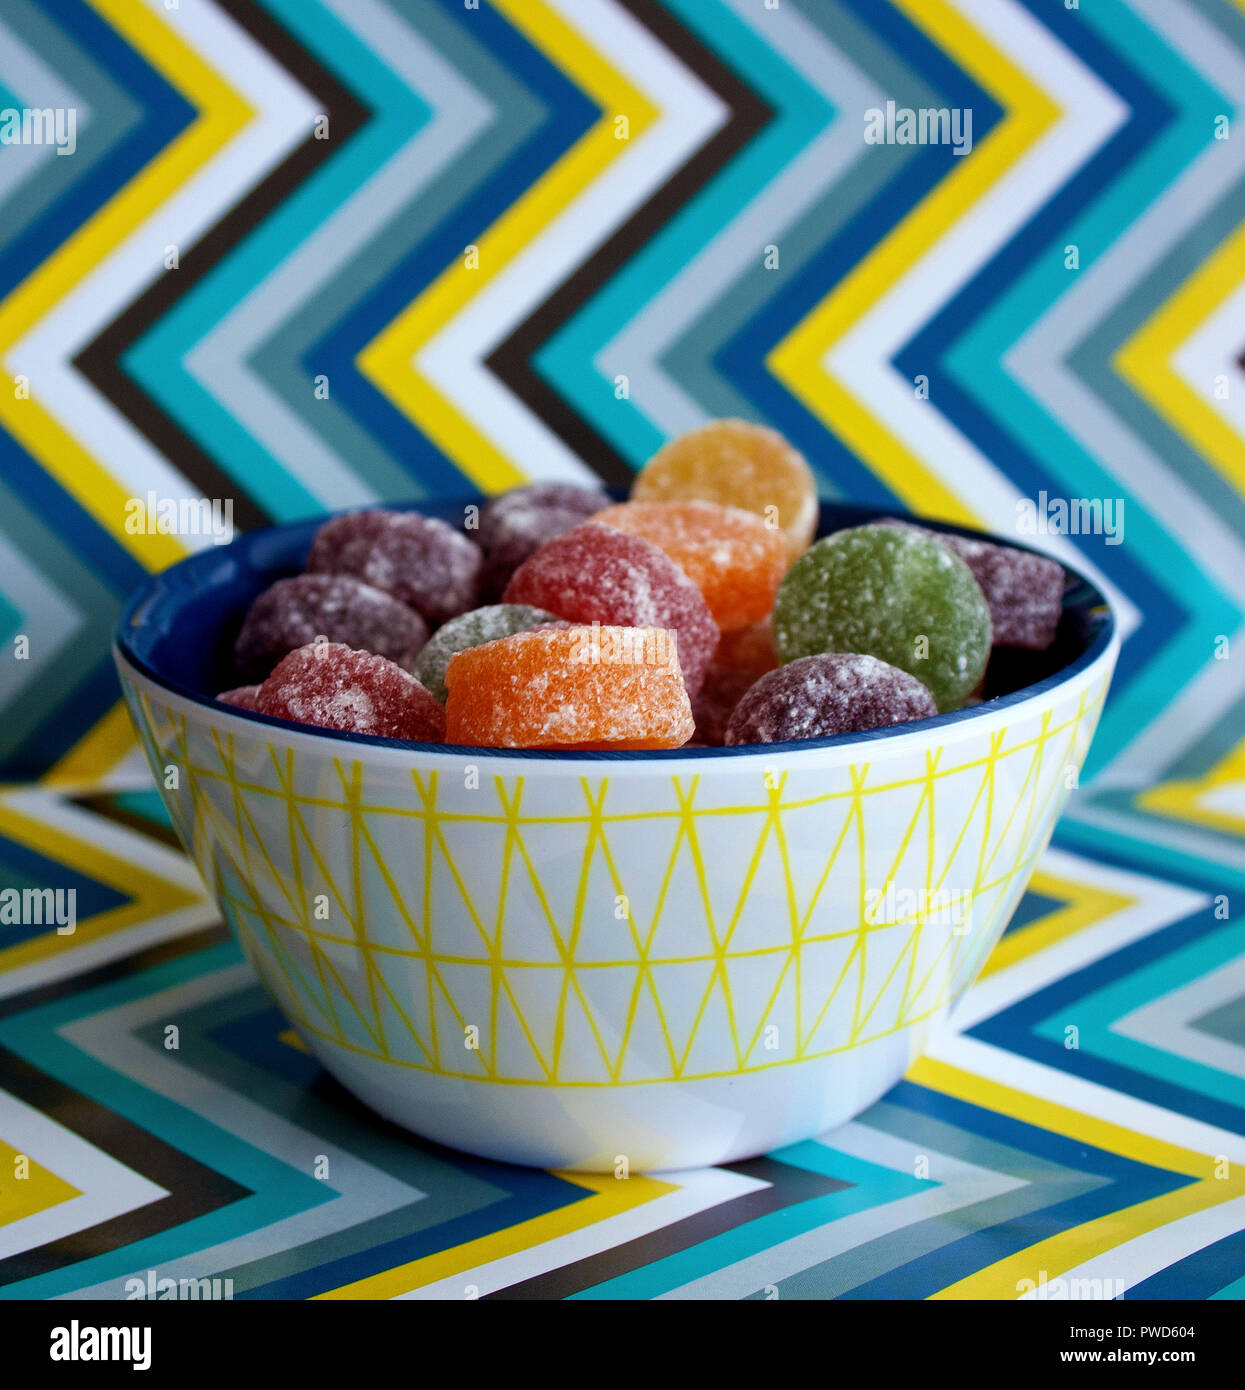 Un bol de bonbons/candy avec un arrière-plan en zigzag Banque D'Images